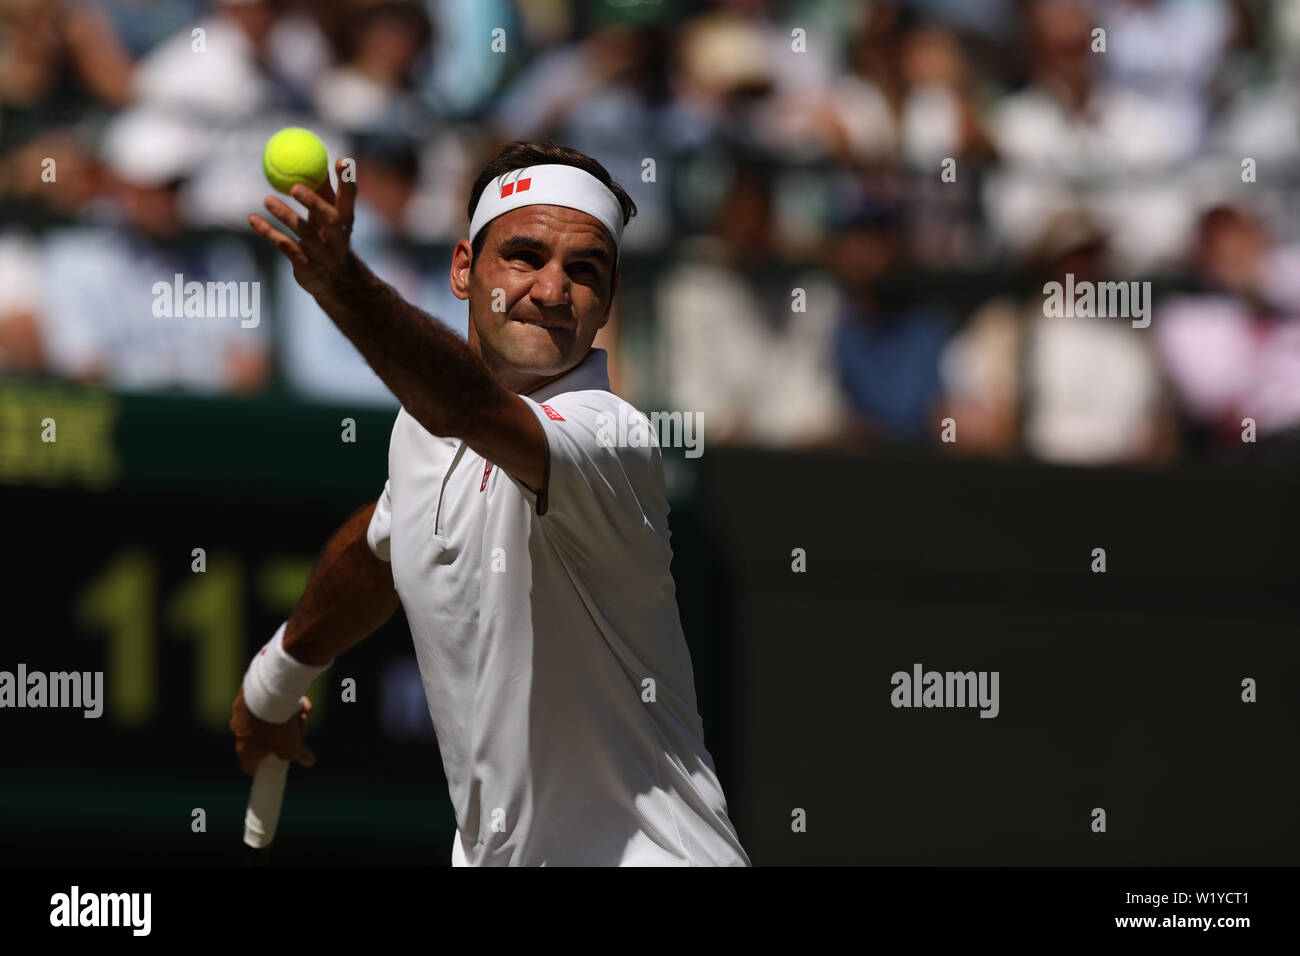 Londres, ANGLETERRE - 04 juillet : Roger Federer de la Suisse en action durant son masculin deuxième tour sur pendant quatre jours des championnats - Wimbledon 2019 au All England Lawn Tennis et croquet Club le 04 juillet 2019, à Londres, en Angleterre. Banque D'Images